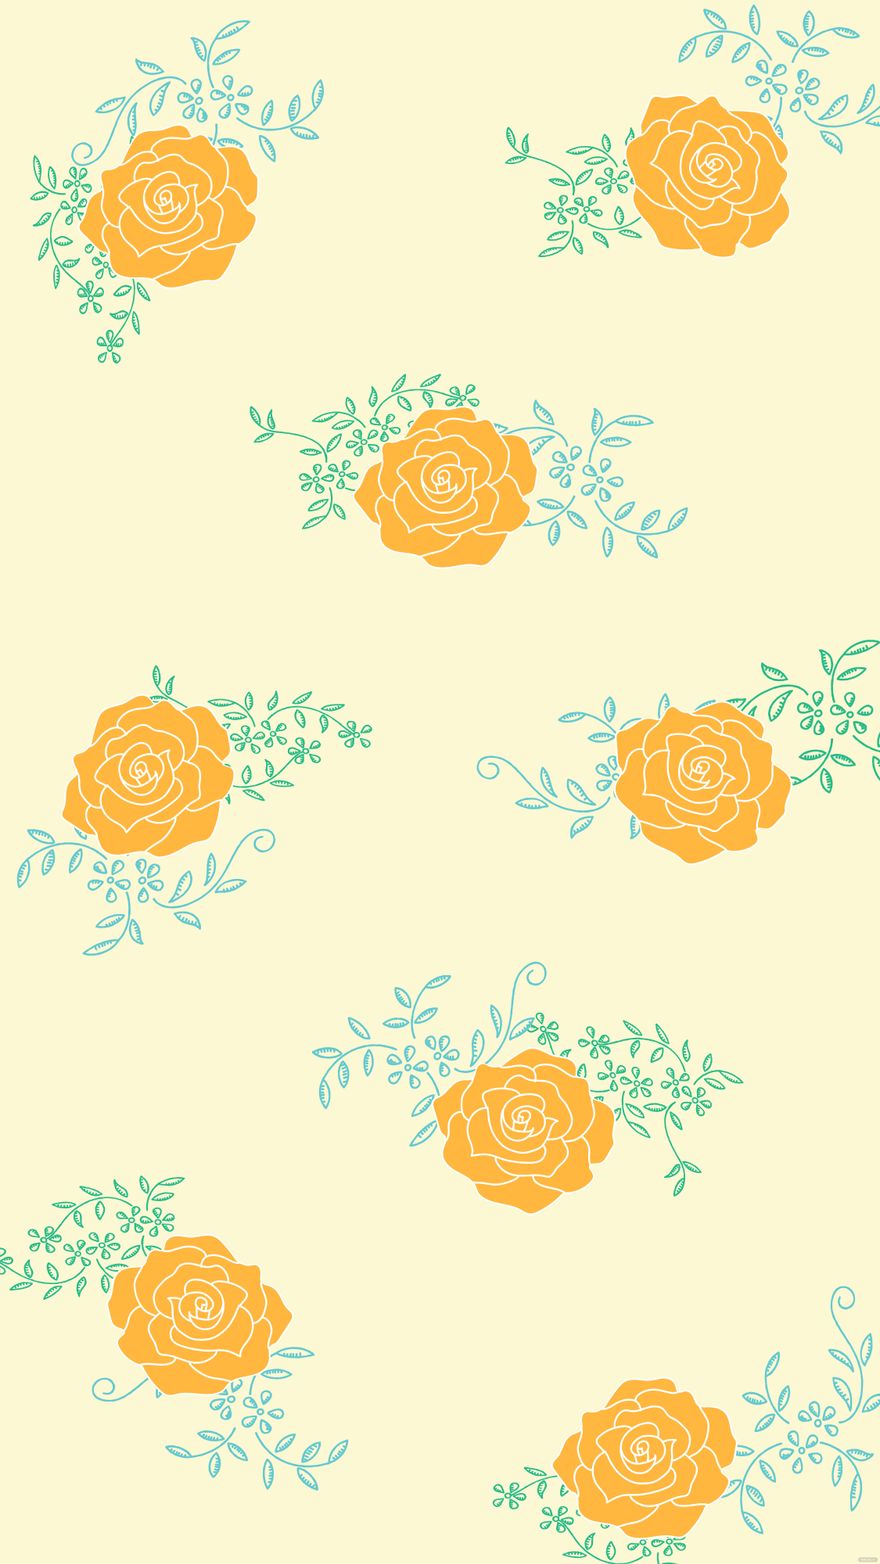 Free Ornamental Summer Floral Background in Illustrator, EPS, SVG, JPG